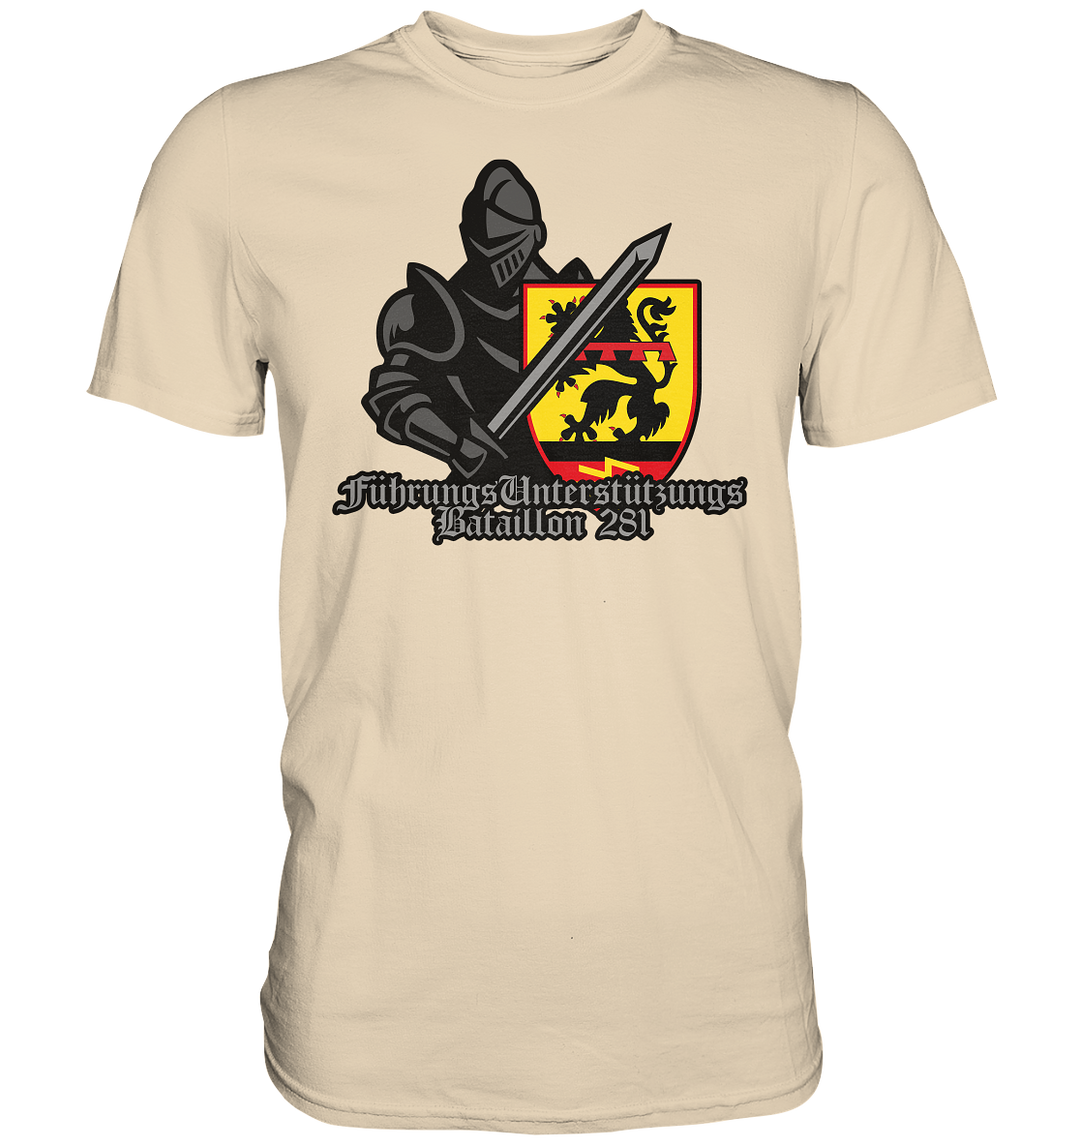 "Führungsunterstützungsbataillon 281 - Ritter" - Premium Shirt